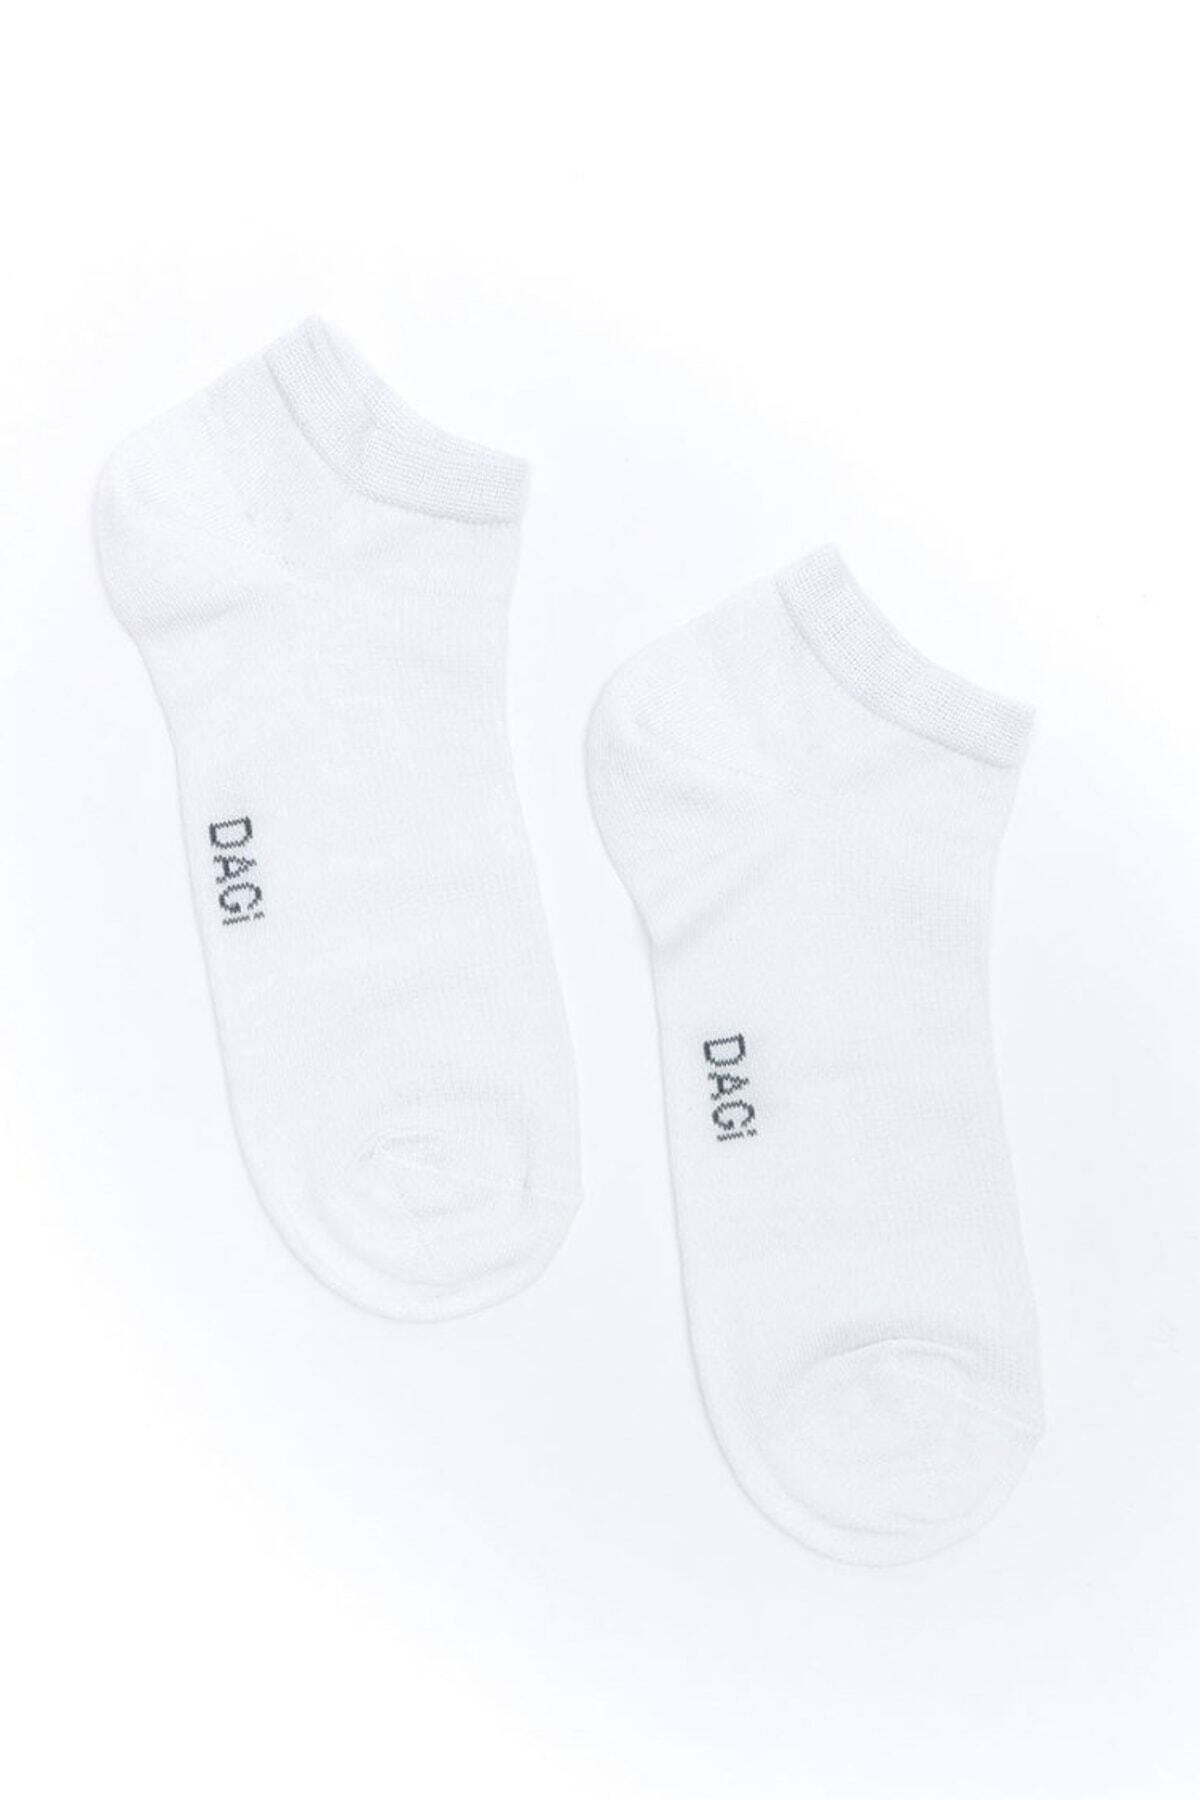 Dagi Men's White Bamboo Booties Socks